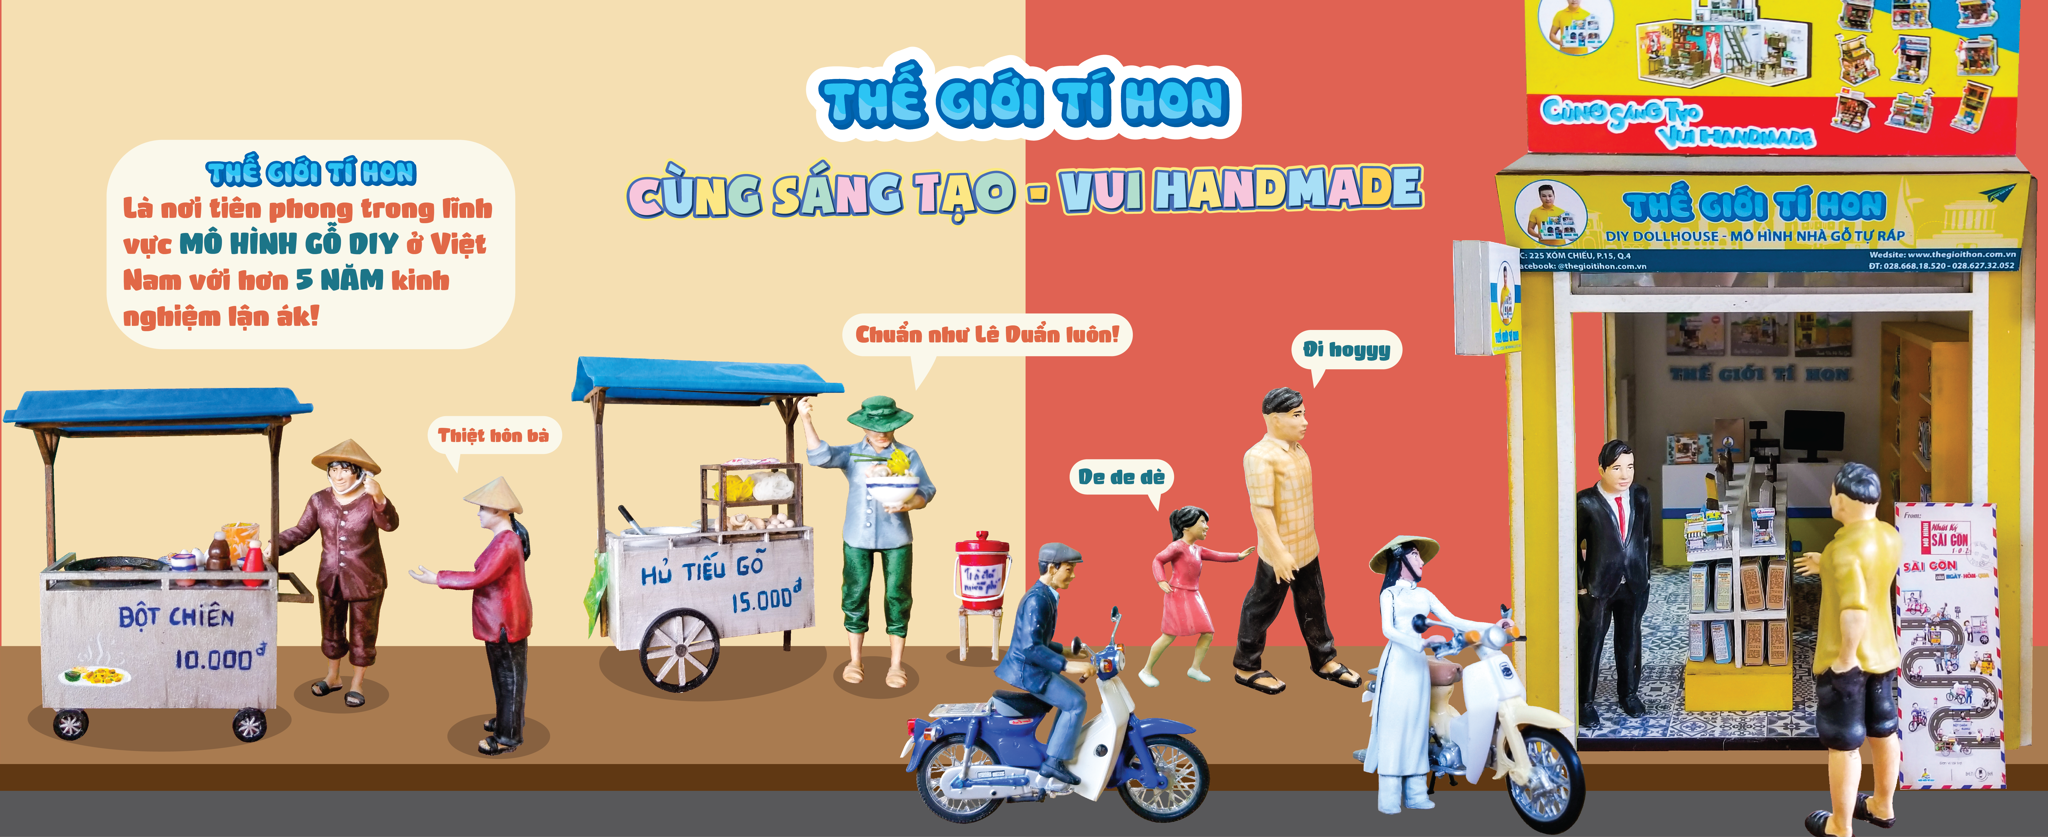 Đồ Chơi Mô Hình Handmade Việt Nam Của Tuấn Huỳnh